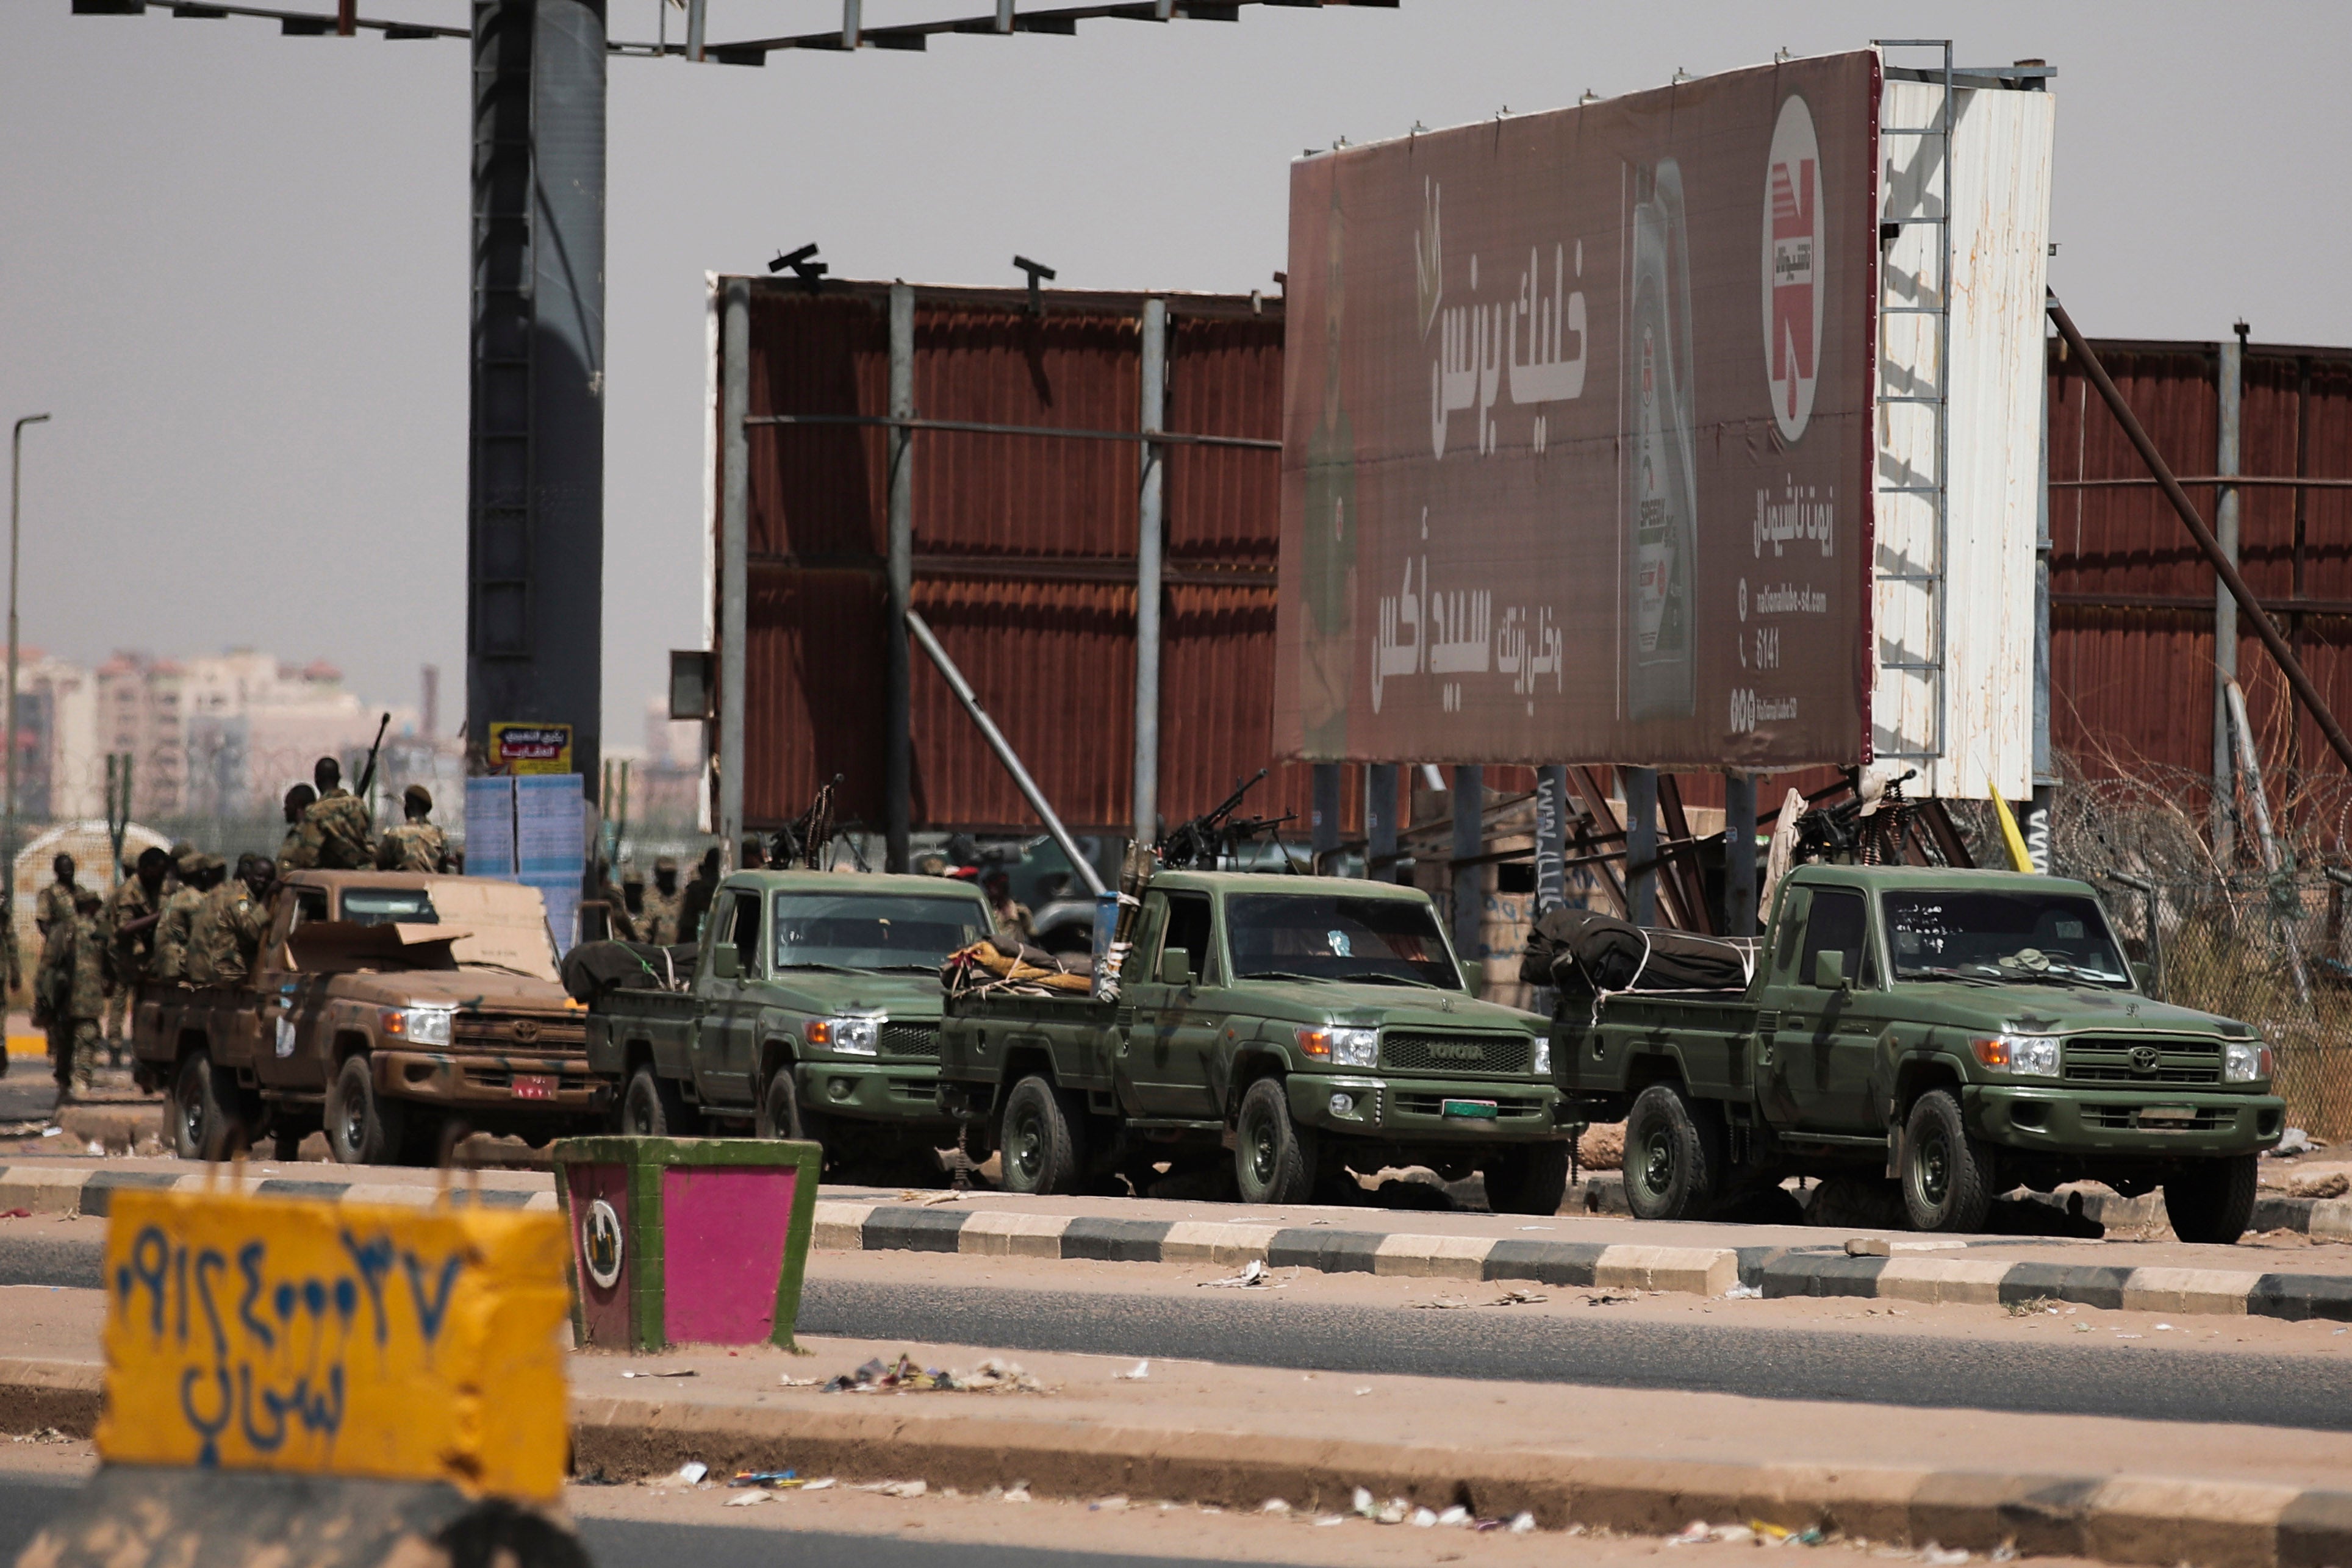 قوات الأمن السودانية منتشرة خلال مظاهرة في الخرطوم، السودان يوم الثلاثاء 26 أكتوبر/تشرين الأول 2021.